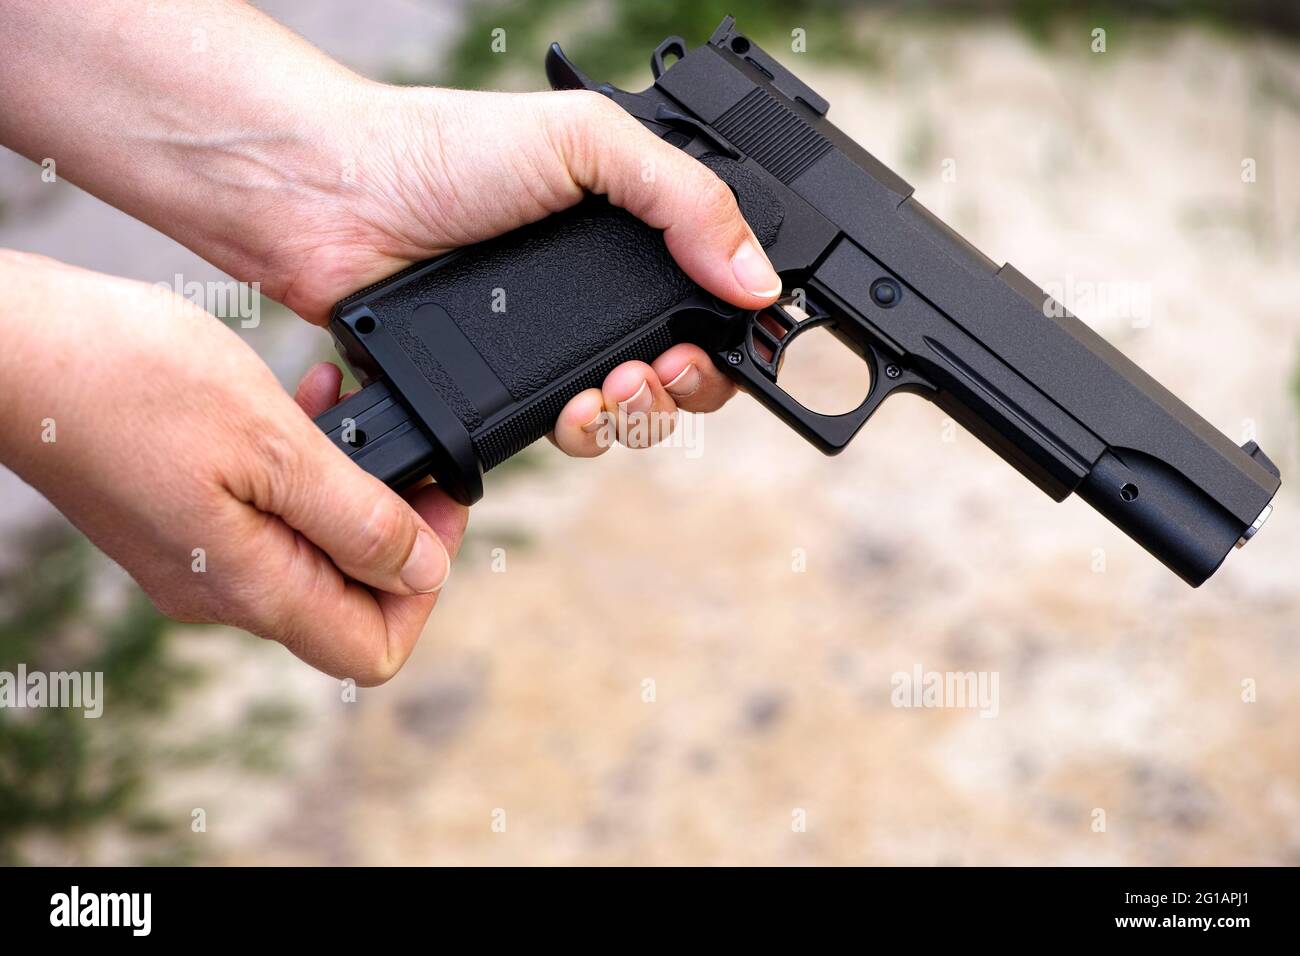 Una persona que vuelve a cargar una pistola de aire comprimido Foto de stock